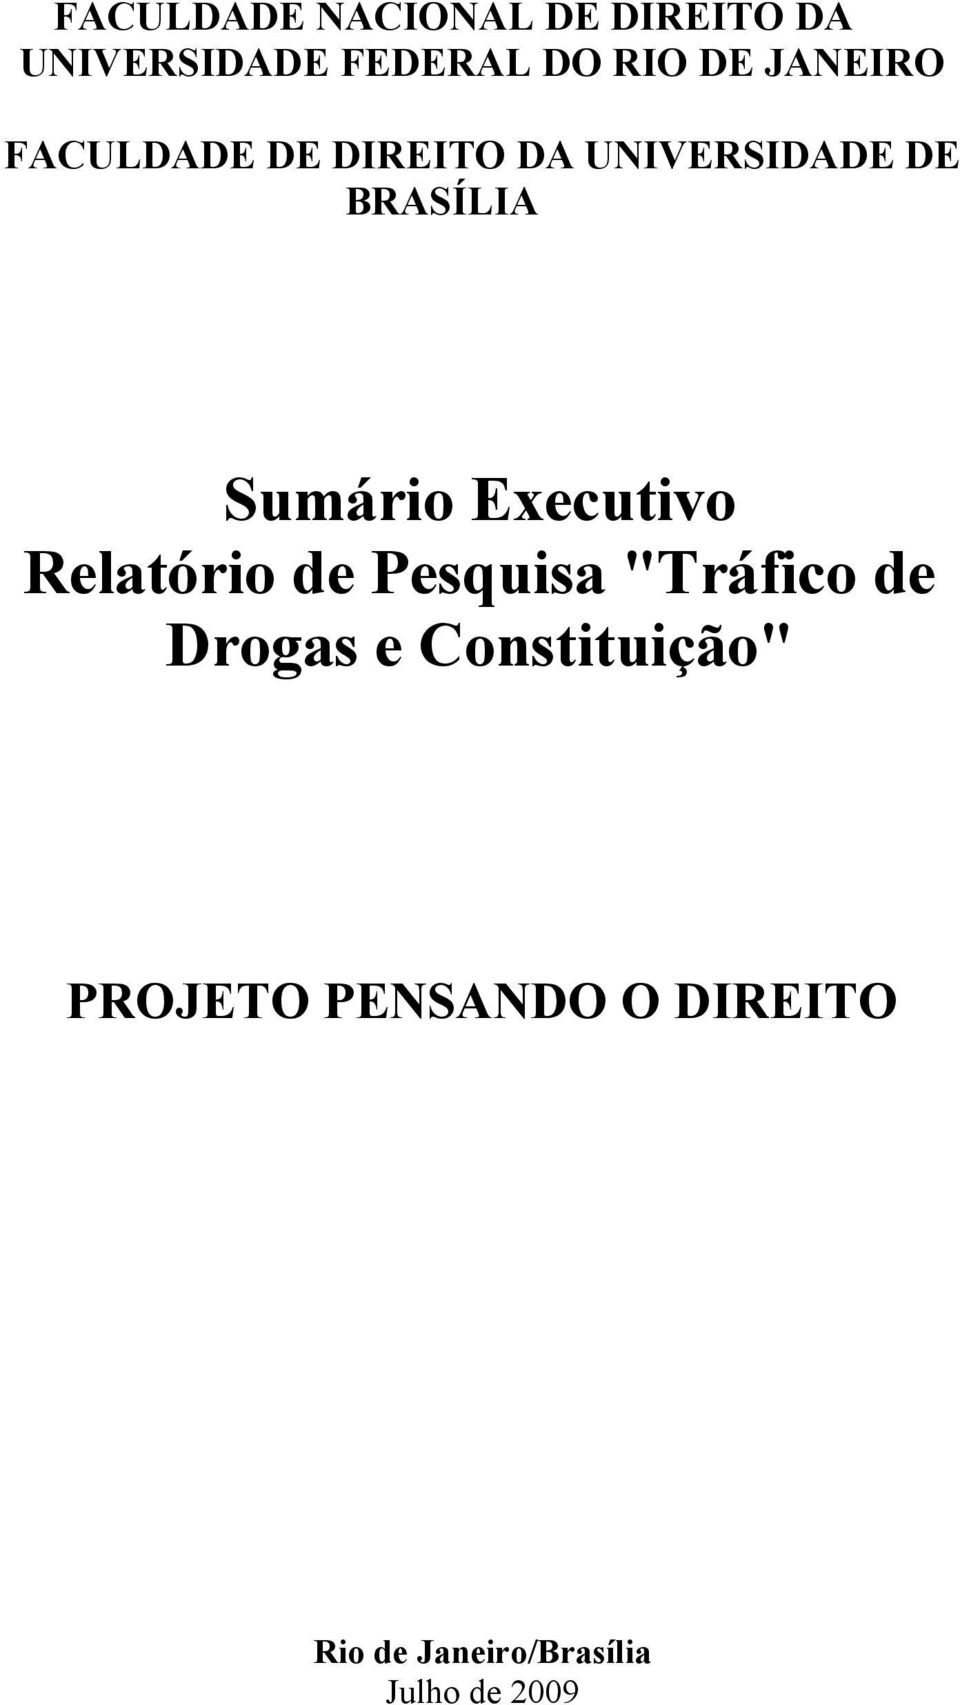 Executivo Relatório de Pesquisa "Tráfico de Drogas e